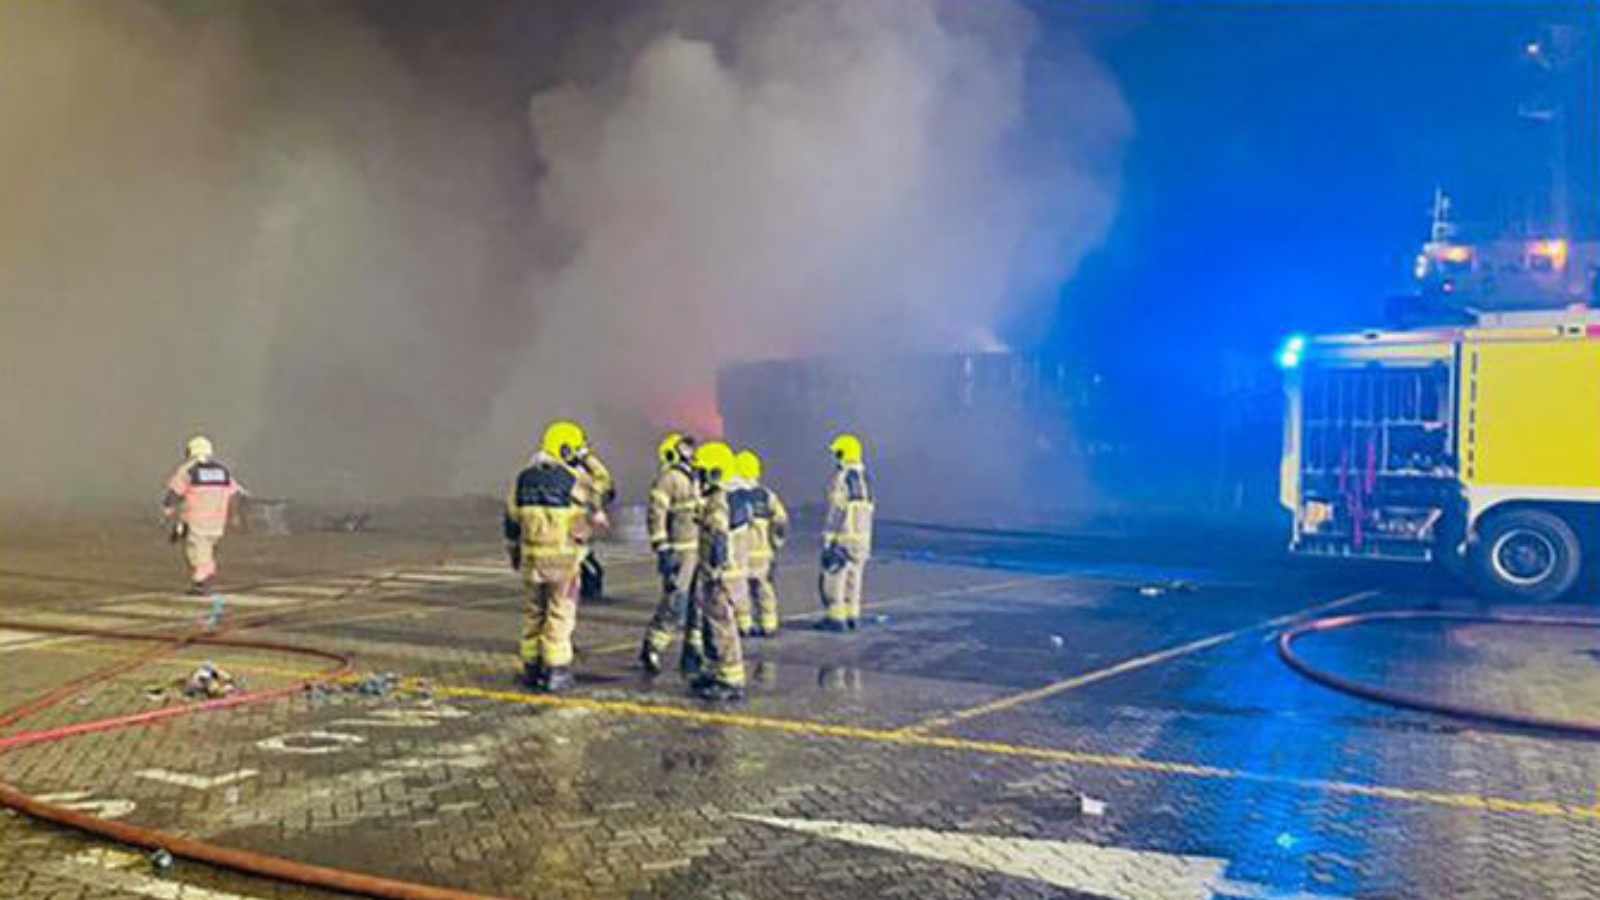 هرع رجال الإطفاء إلى مكان الحادث وأخلوا المبنى بعد ست دقائق من إخطارهم بالحريق الساعة 12:35 مساءً.